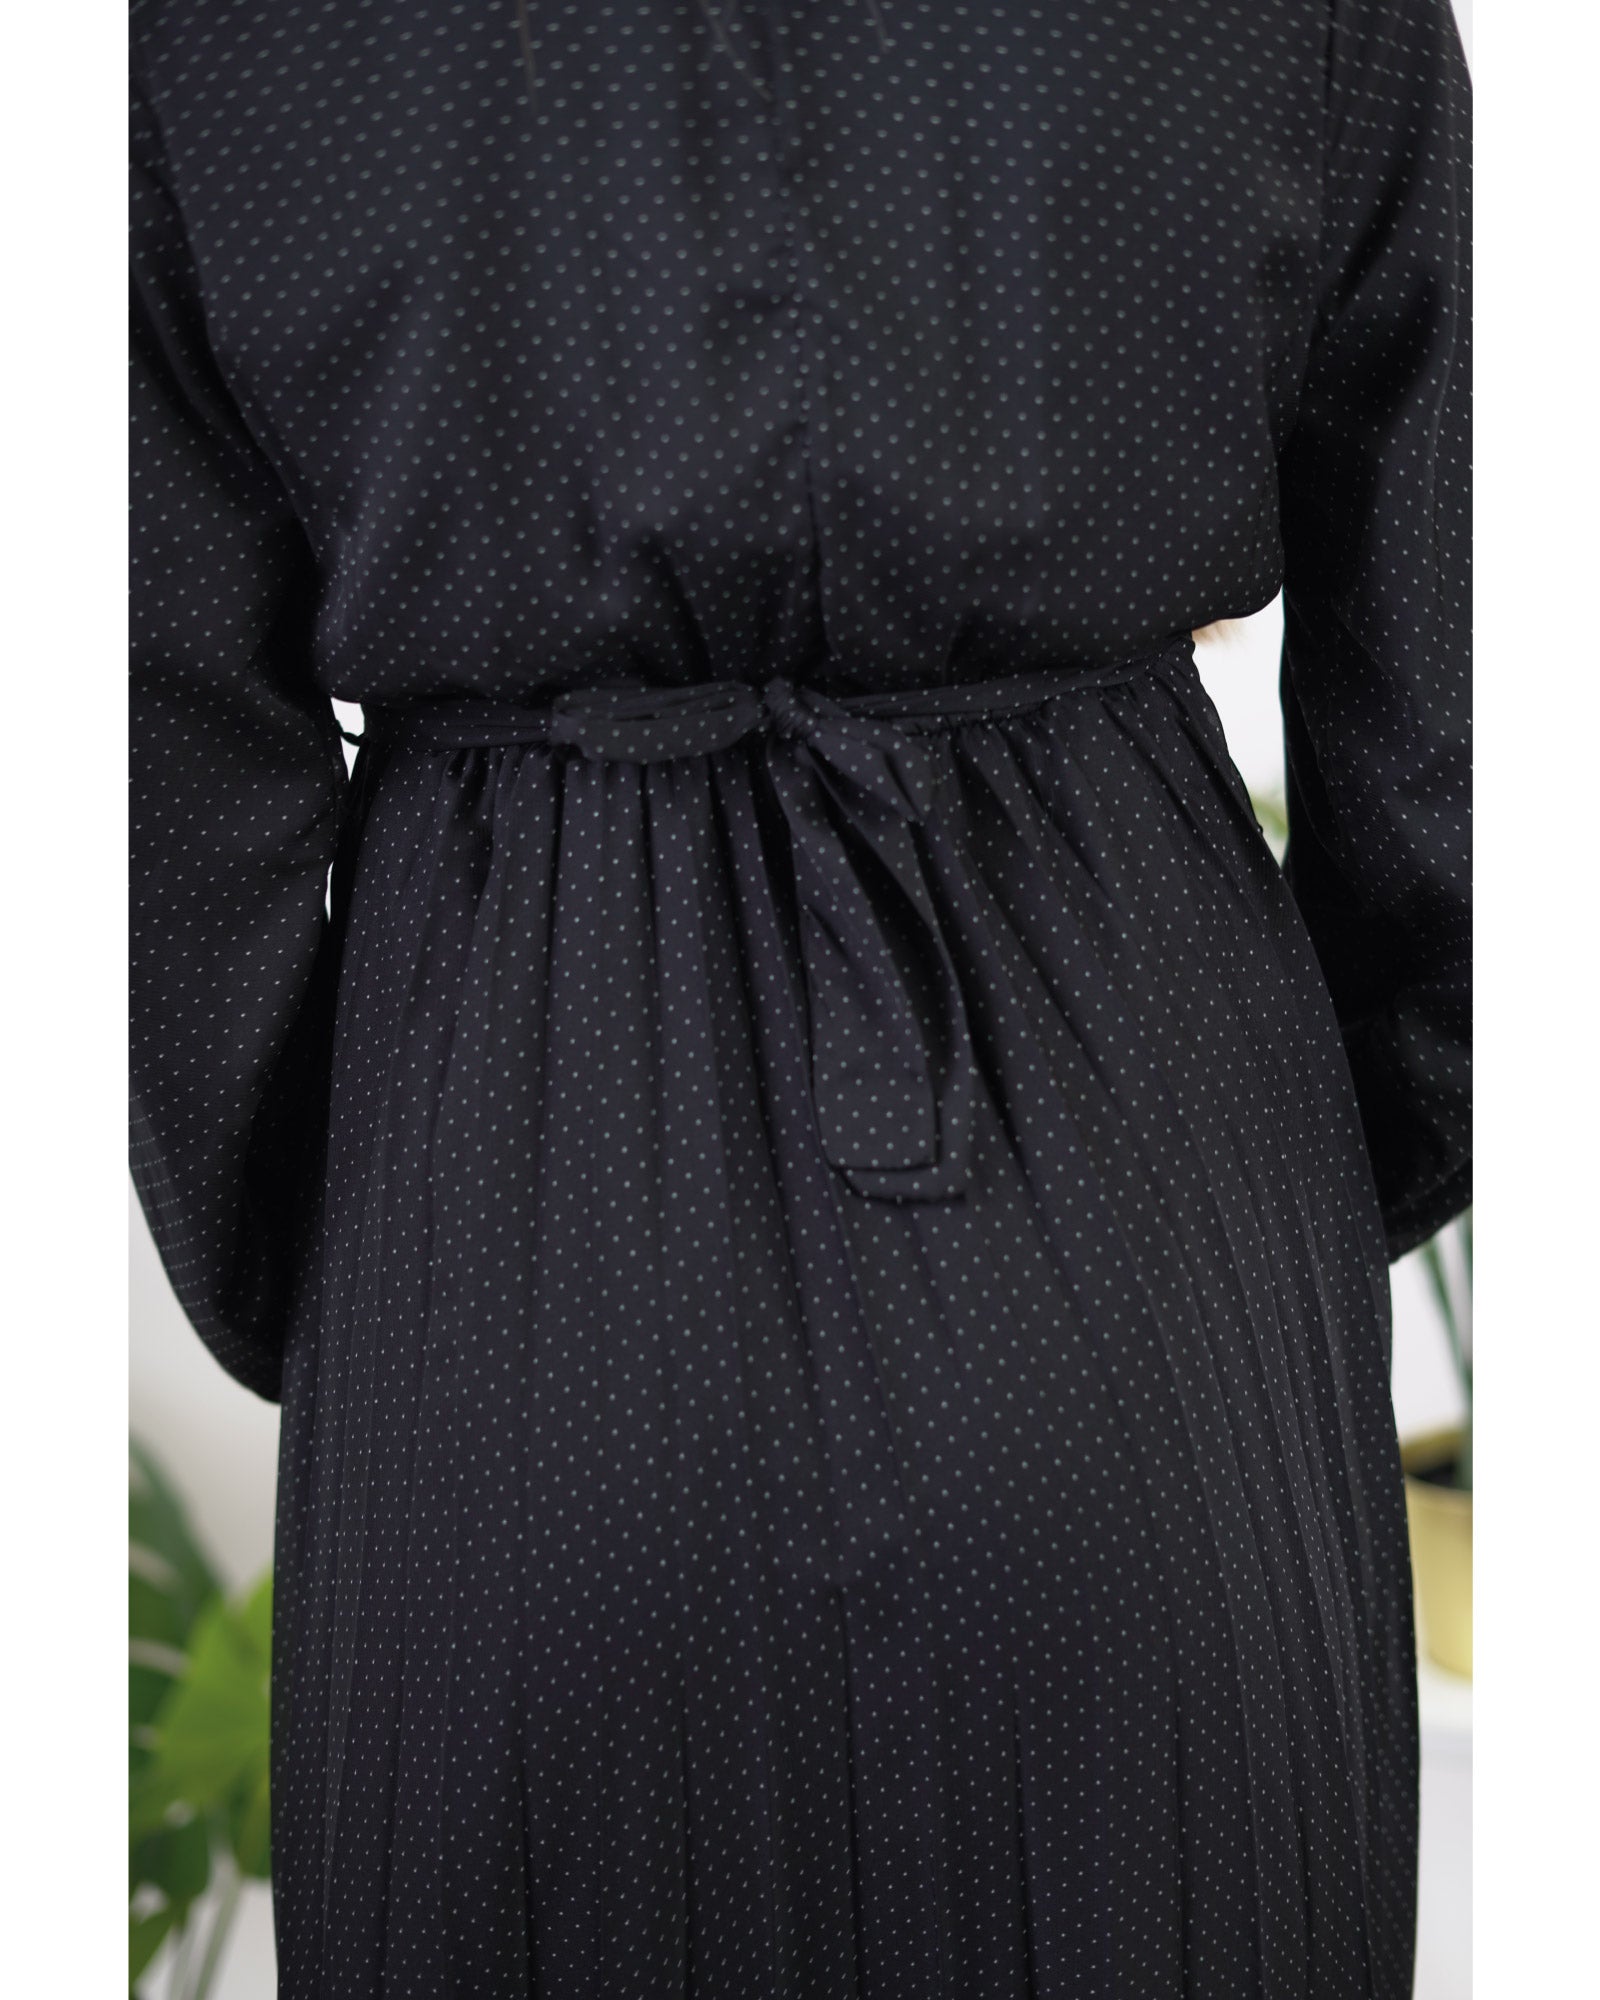 Hijab-Kleid Schwarz,Lang mit kleinen Punkten geschmückt